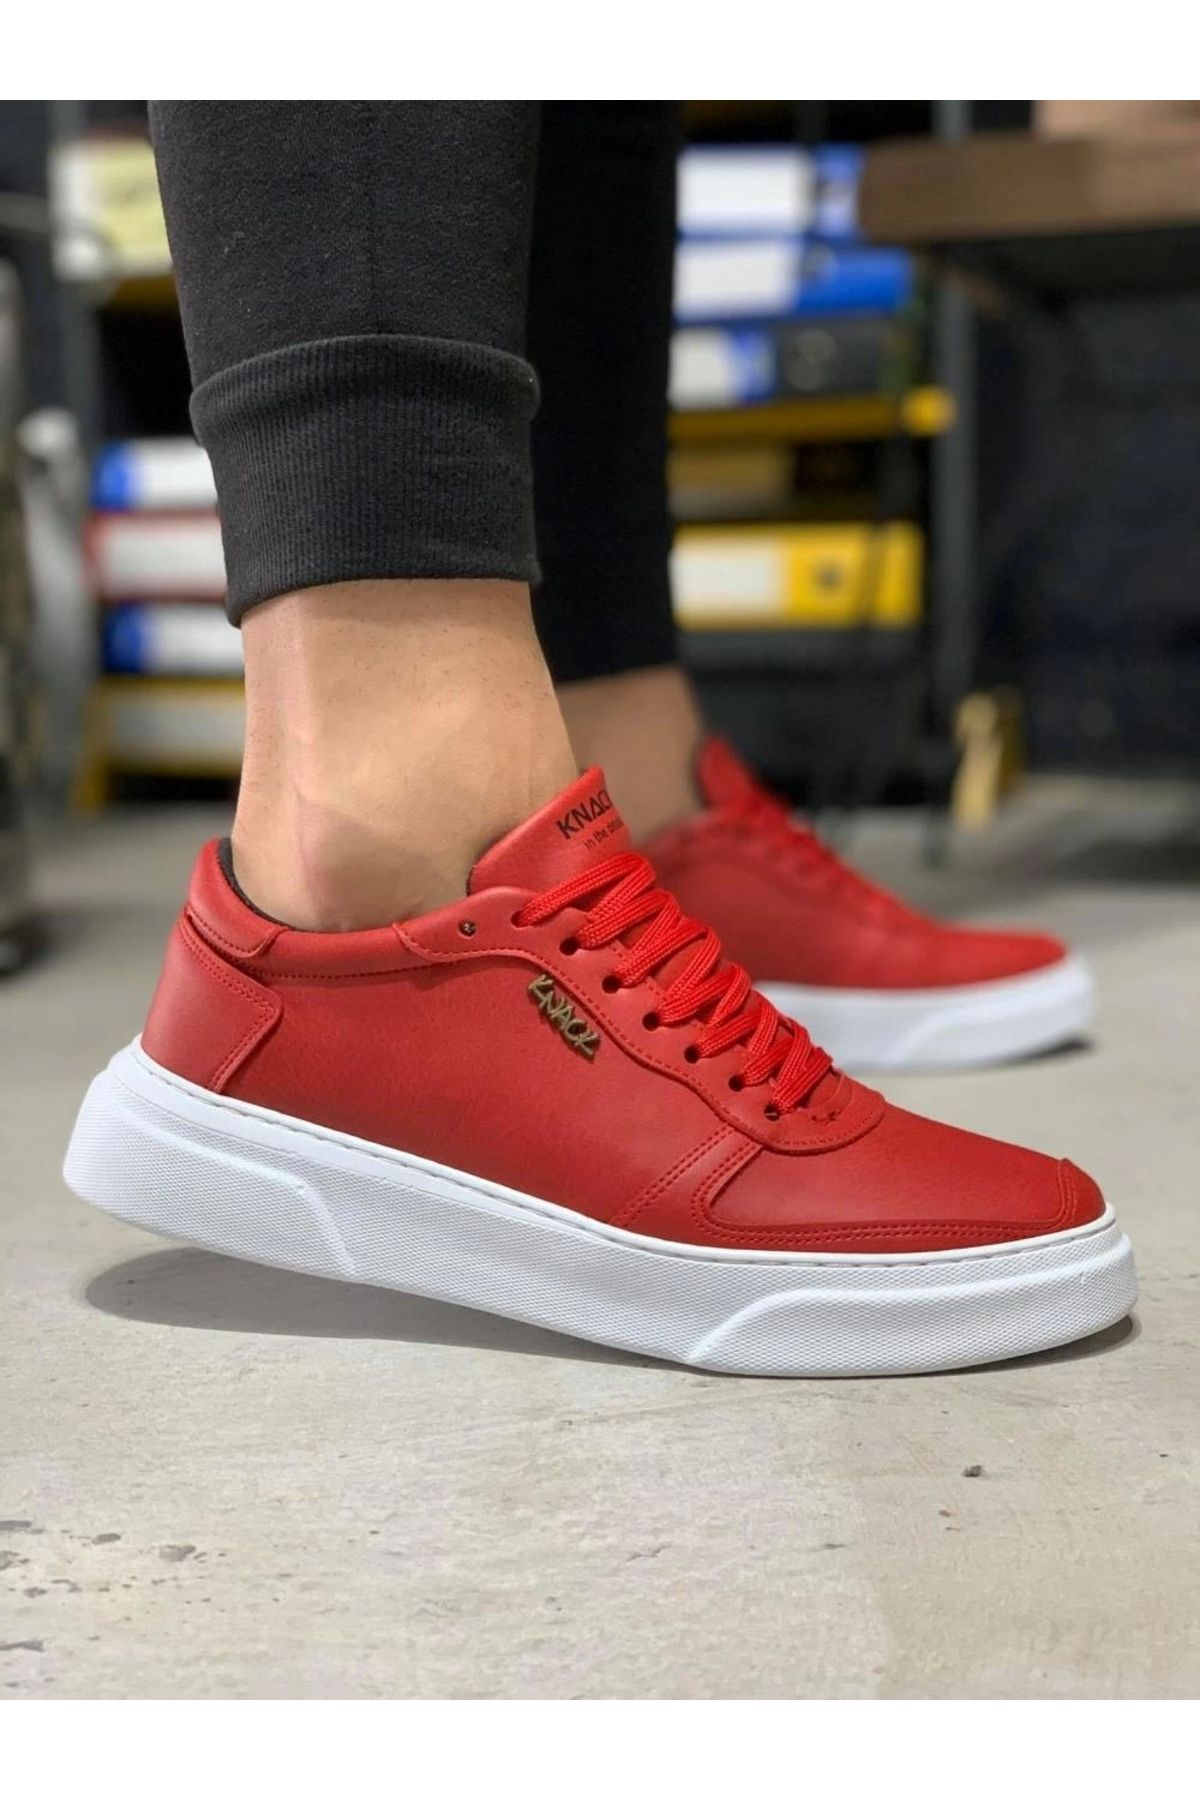 shoecide Bağcıklı Özel Tasarım Cilt Ortopedik Taban Kırmızı Erkek Günlük Sneaker Ayakkabı